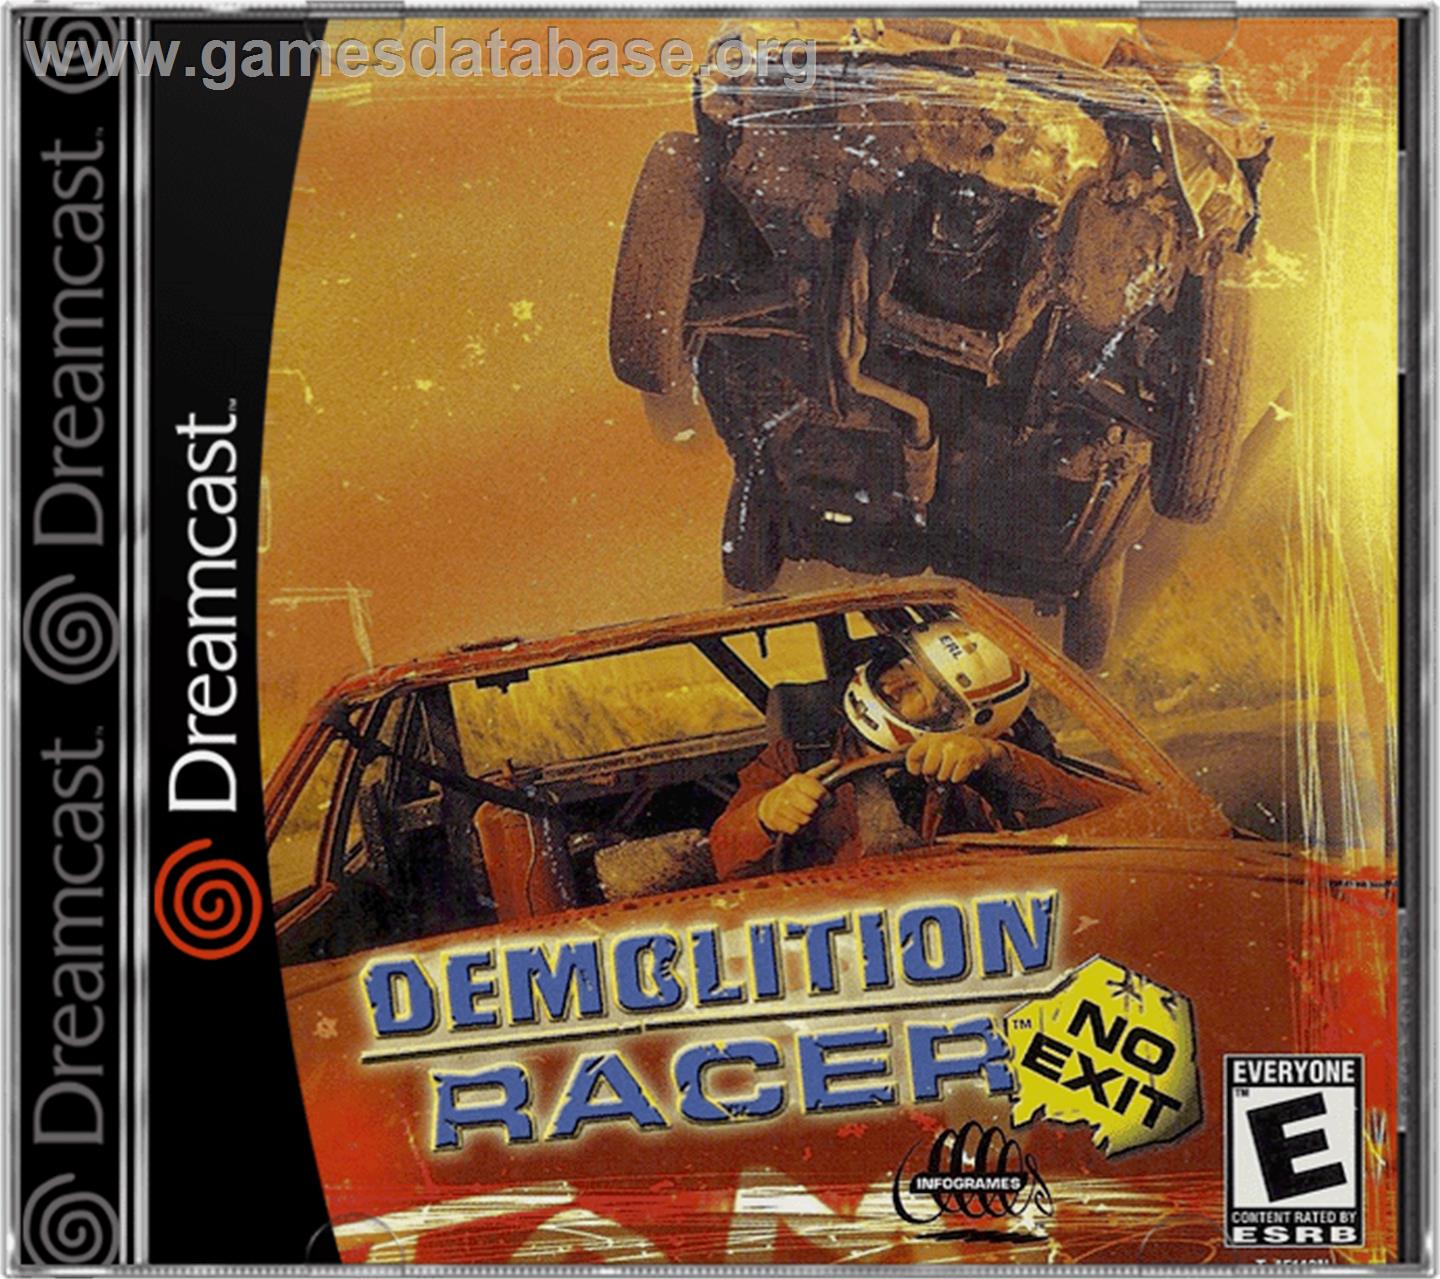 Demolition Racer: No Exit - Sega Dreamcast - Artwork - Box